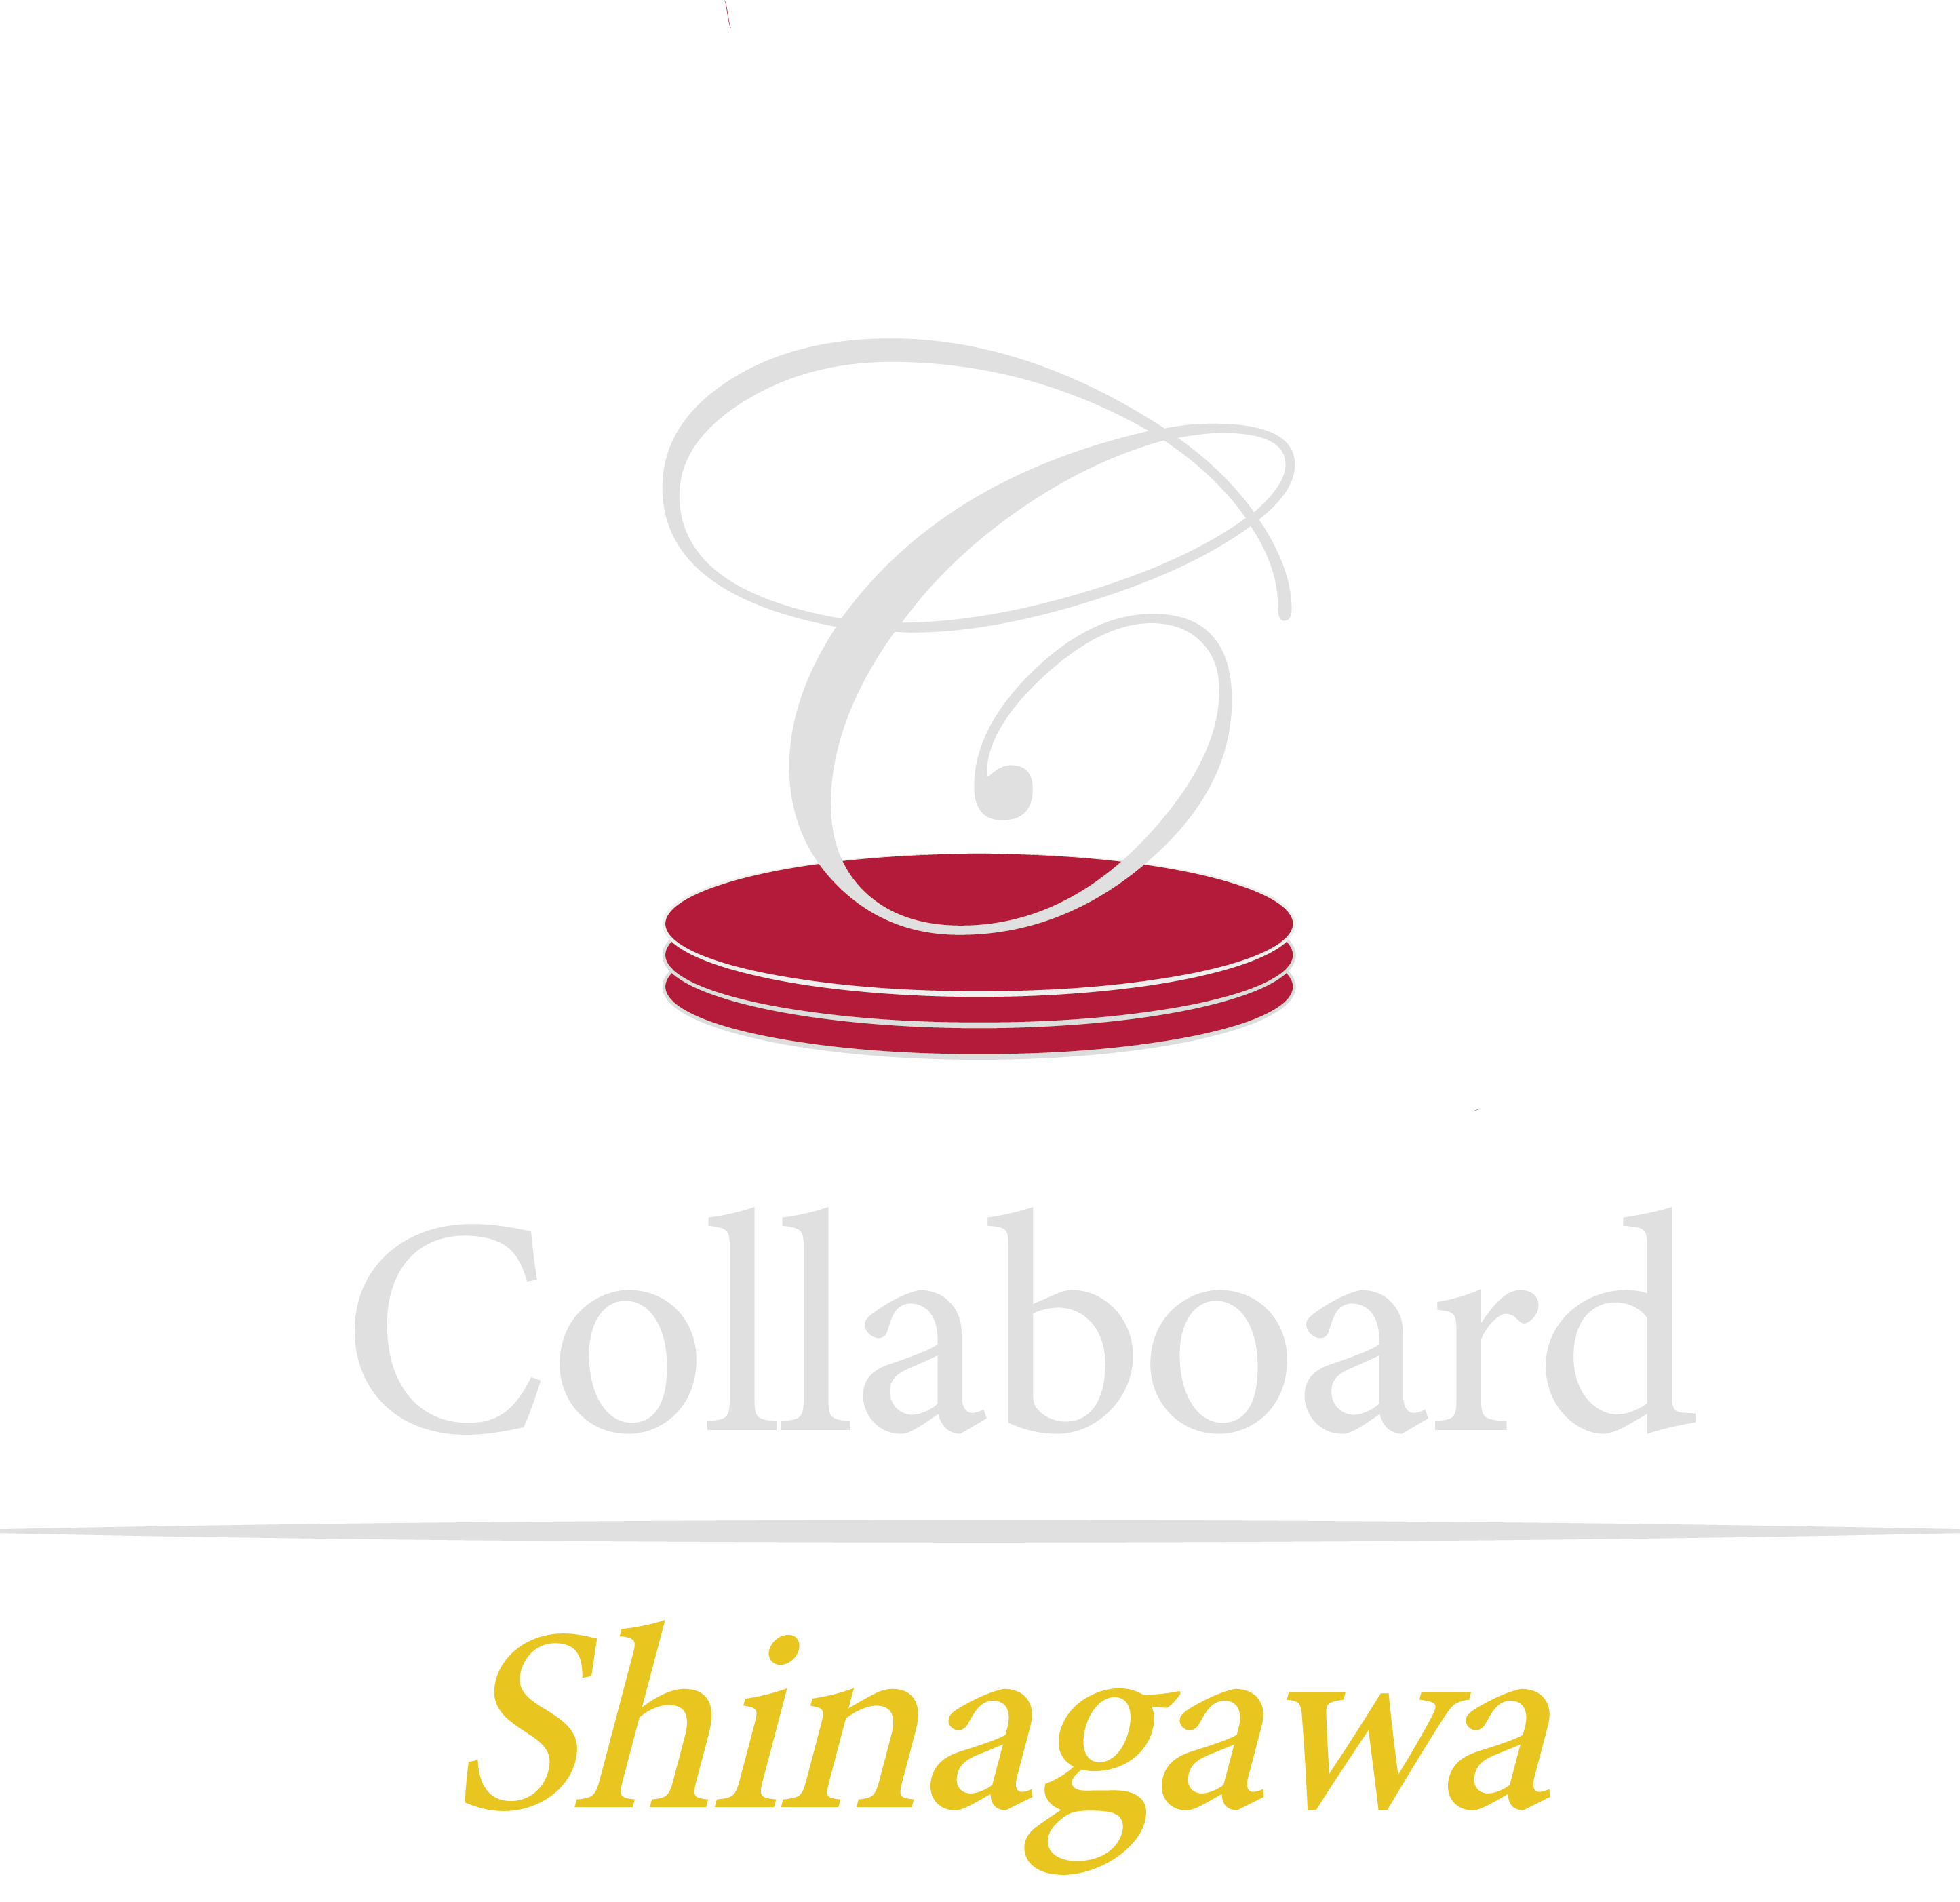 Collaboard Shinagawa Vol.1＆2 JTBキングスチェアプラン